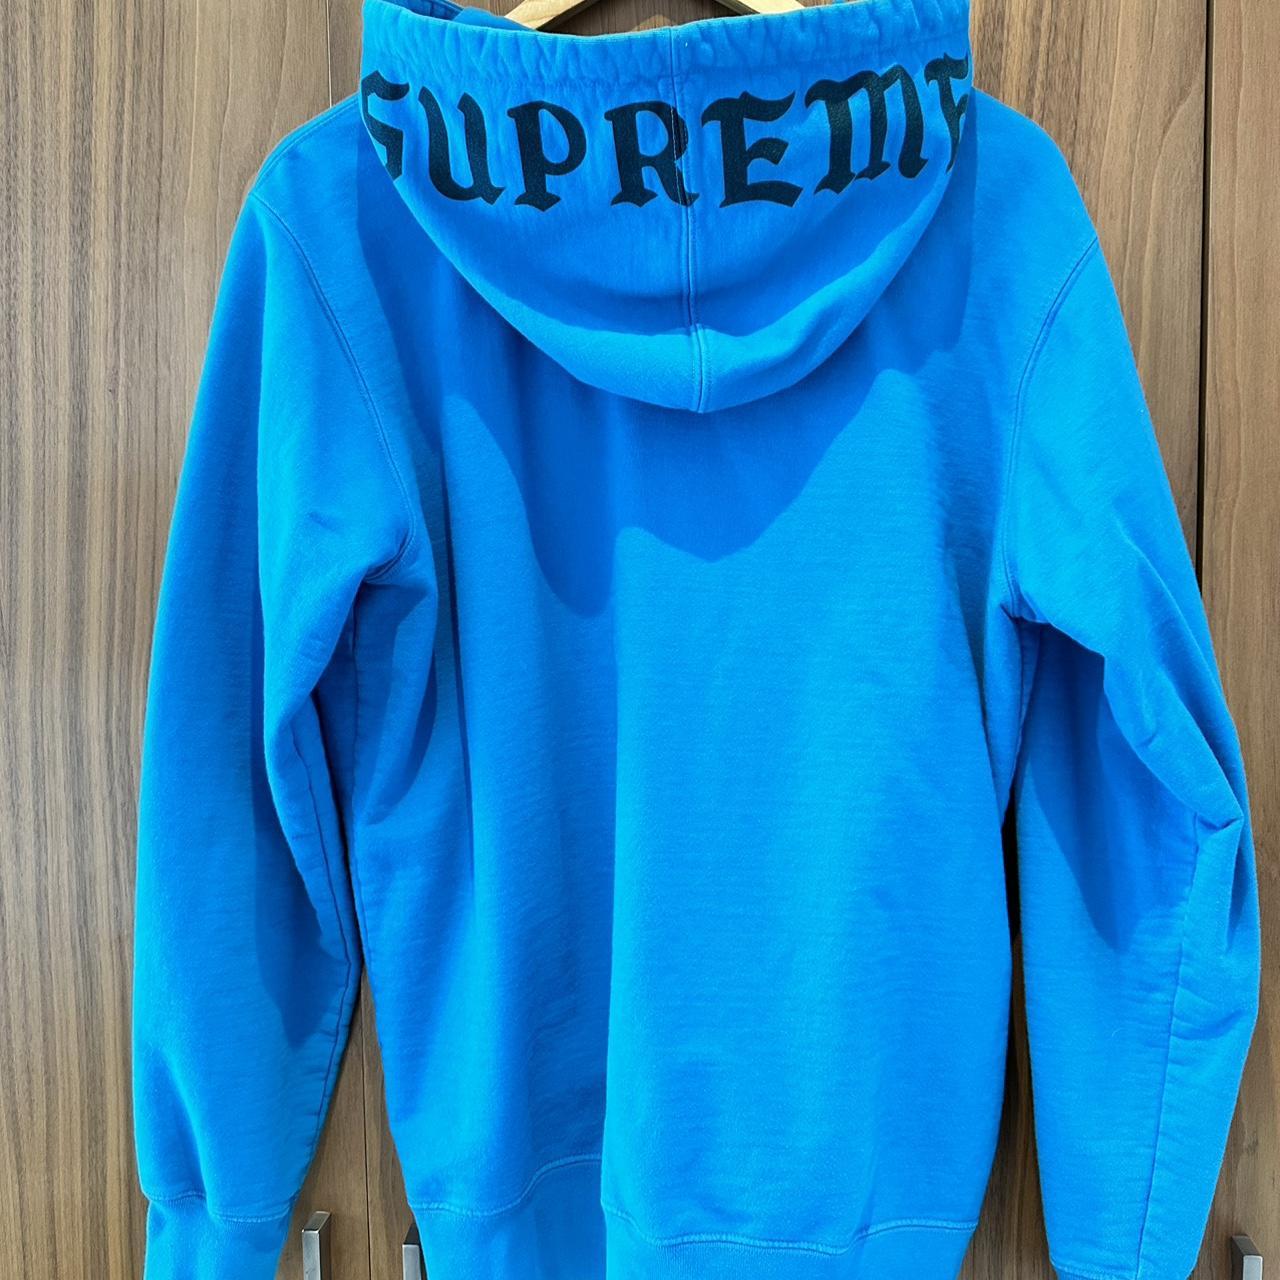 Supreme hoodie ( old english font 2016 blue) large... - Depop